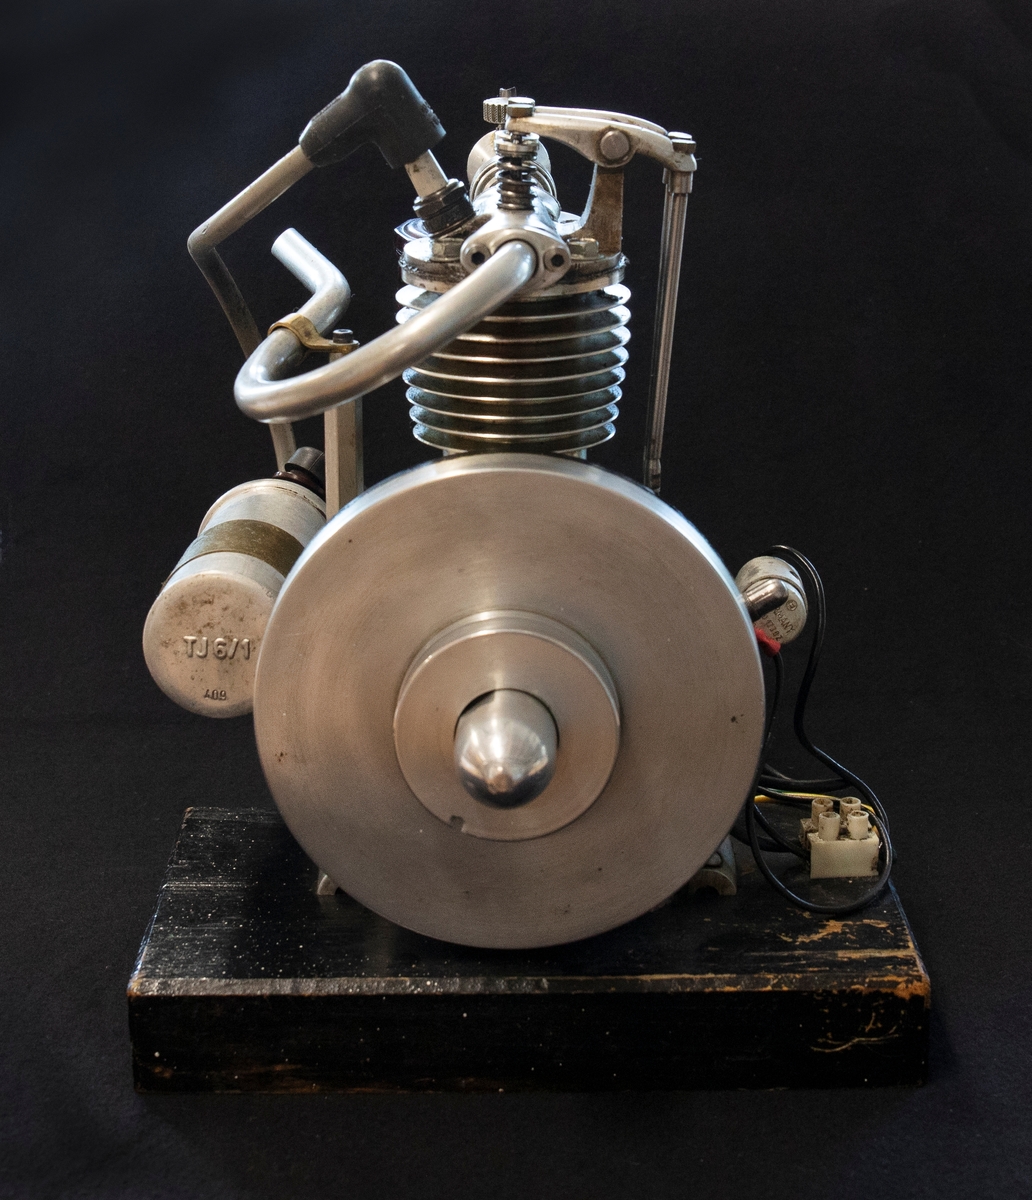 En modell av en fyrtaktsmotor. Motorn är ett hemmabygge. 

Någon gång på 1940-talet köpte Sven Svensson, tillverkaren, en ritning och byggde sedan motorn från grunden. Samtliga delar är egentillverkade, där vissa detaljer är gjutna, bland annat.

Startmotor sätts igång med hjälp av ett batteri, sedan går motorn på bensin.